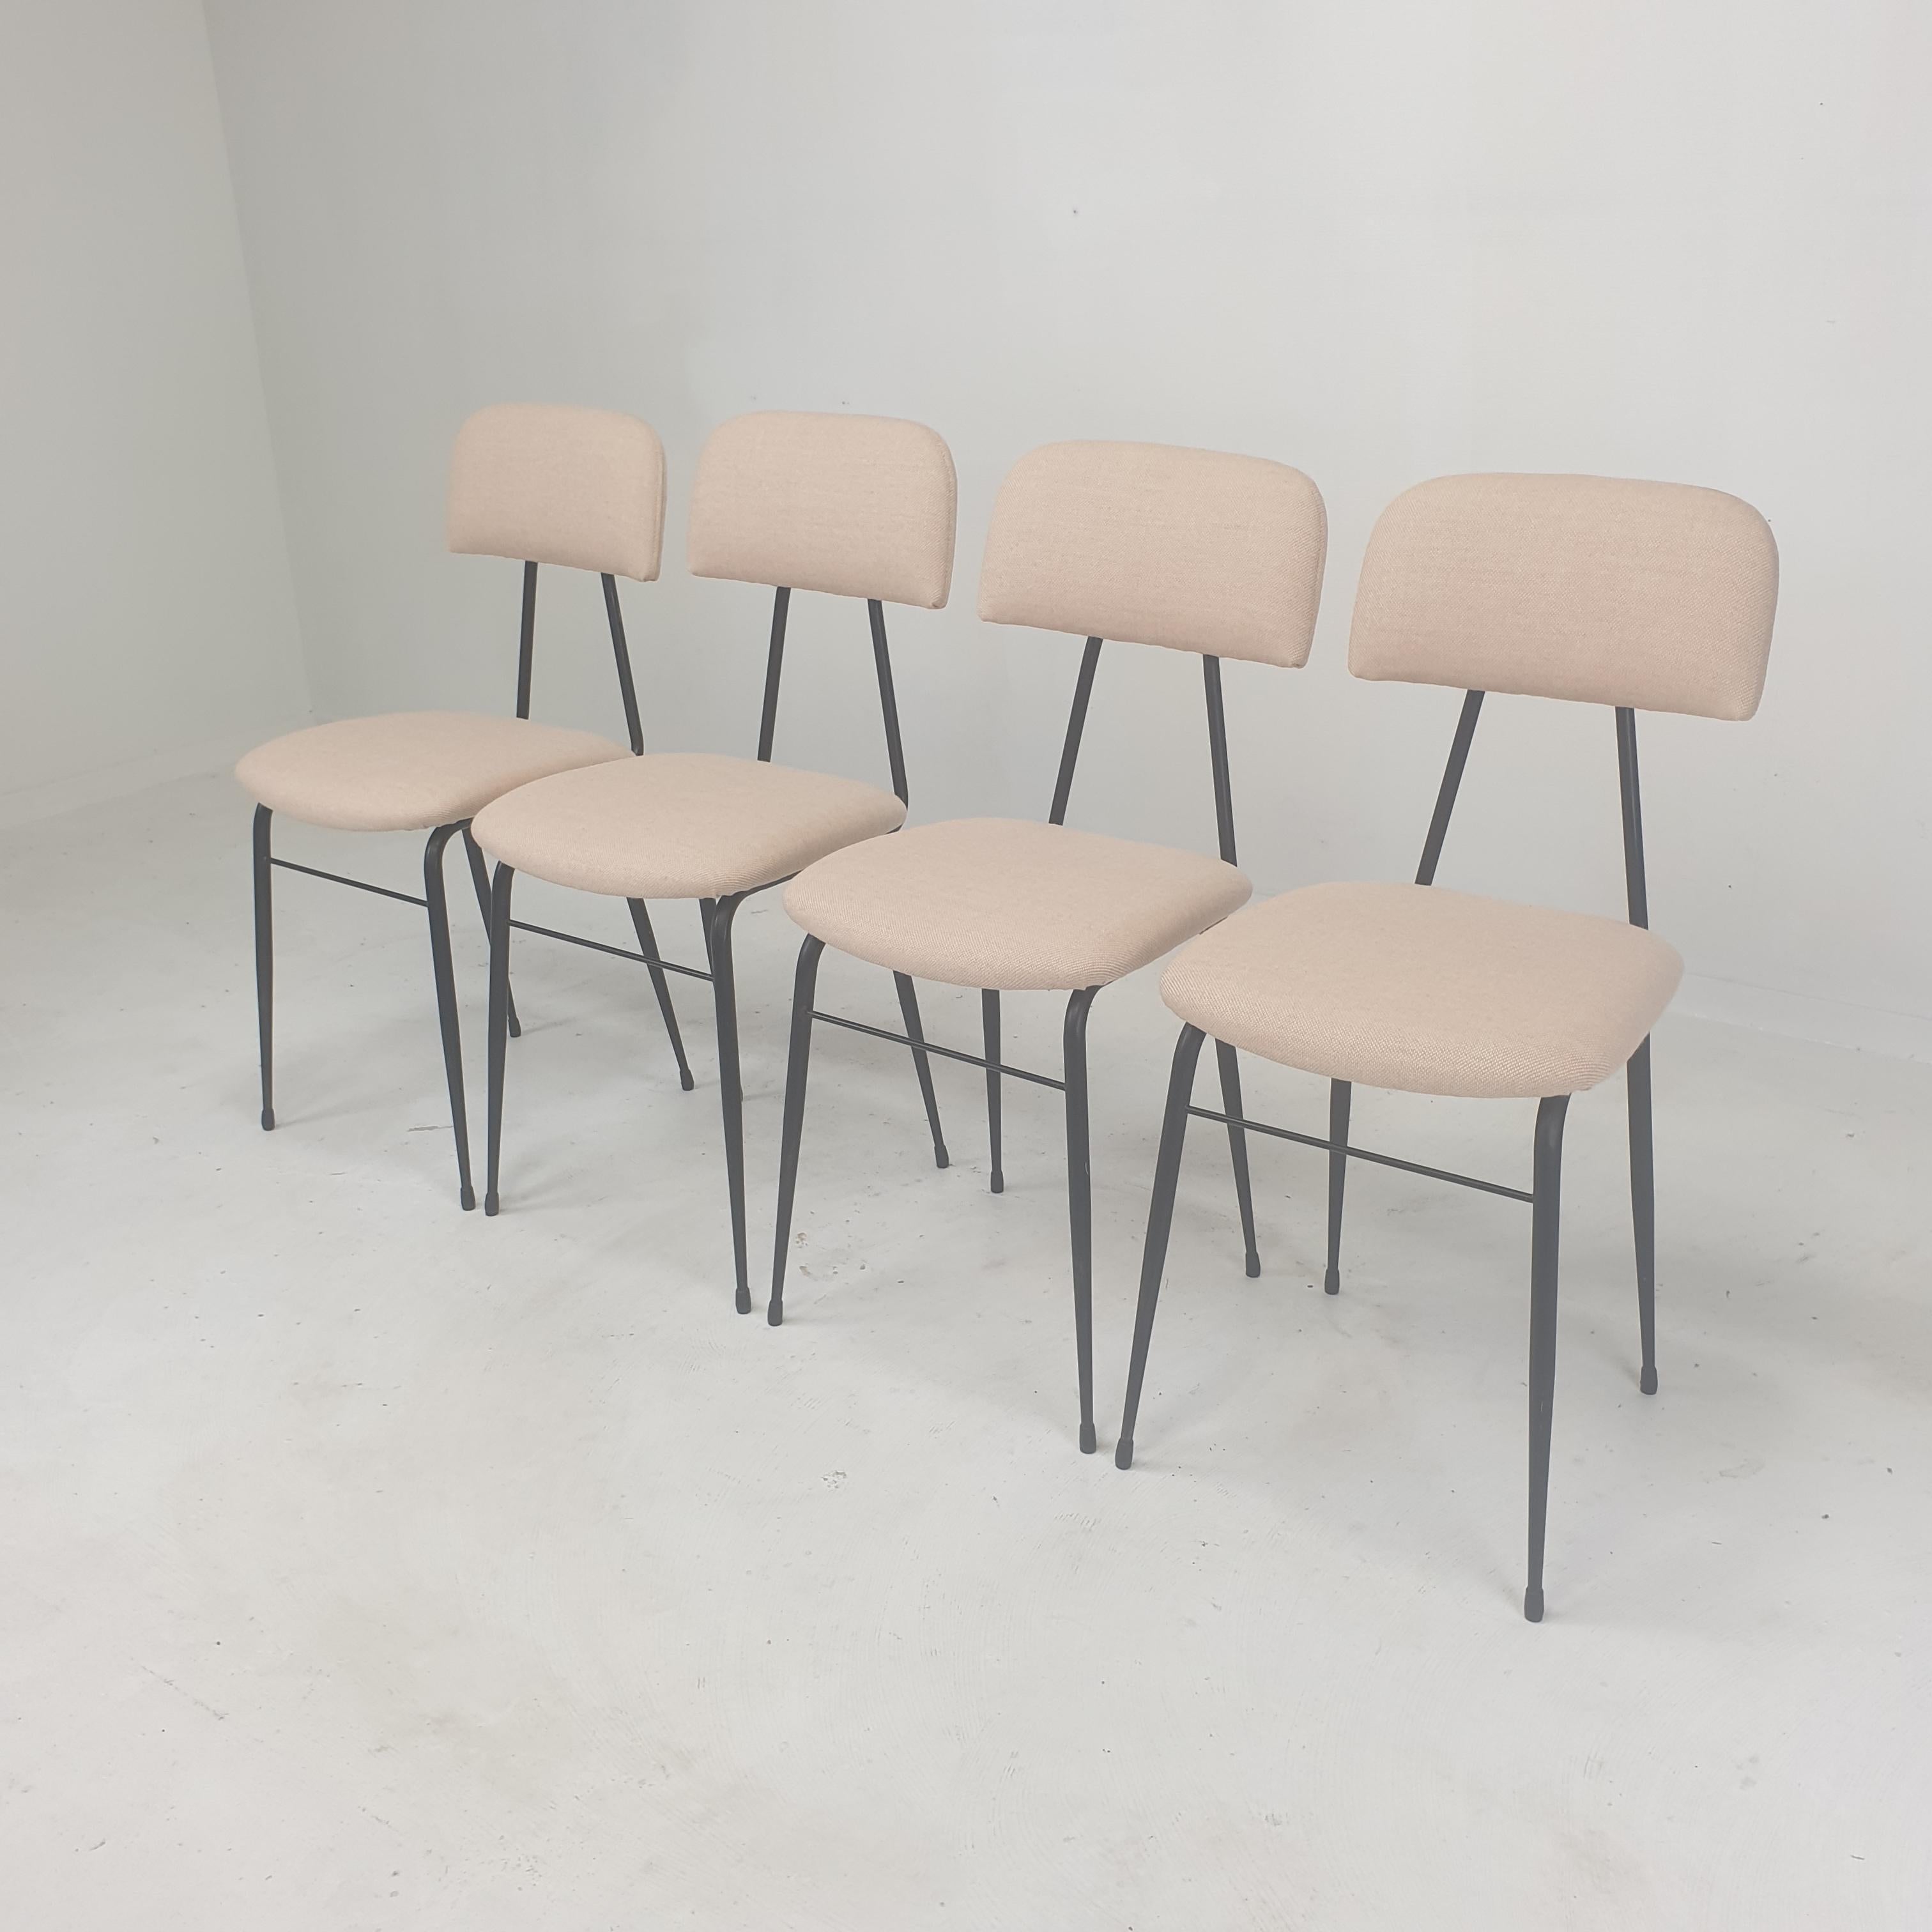 Très bel ensemble de 4 fauteuils italiens, années 1960.
Fabriqué en acier laqué noir.

Les chaises sont restaurées avec un nouveau tissu et une nouvelle mousse, elles sont en parfait état.
Ils sont retapissés avec un joli tissu en laine.
Les